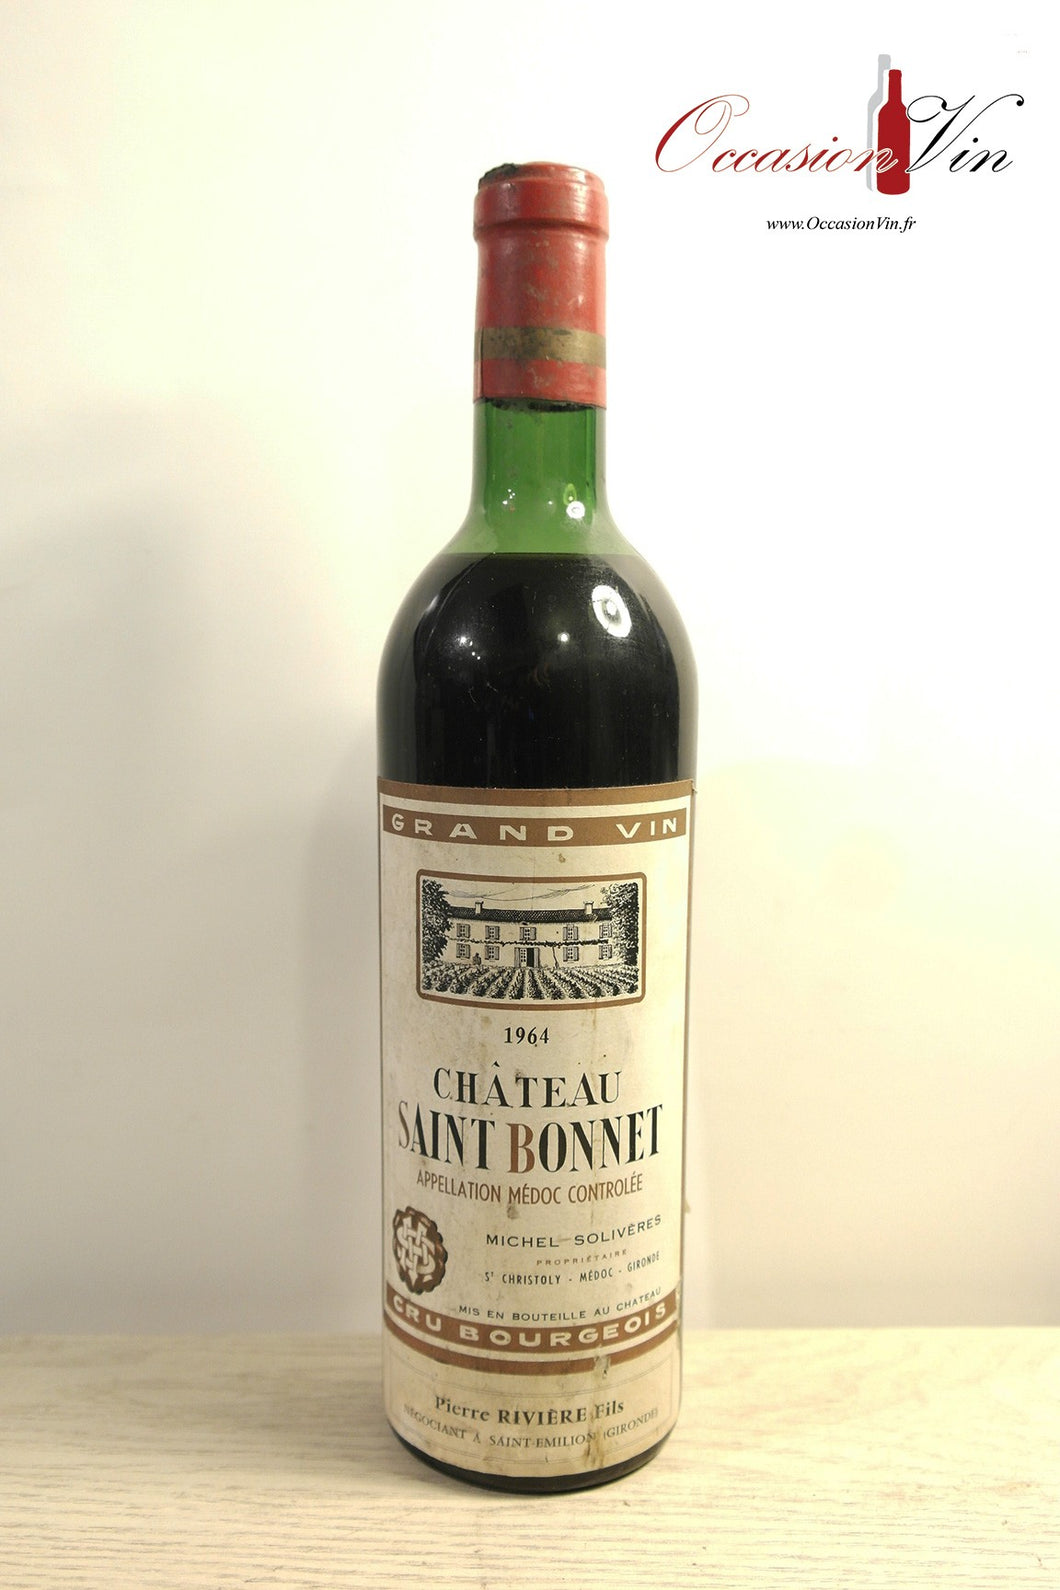 Château Saint Bonnet Vin 1964